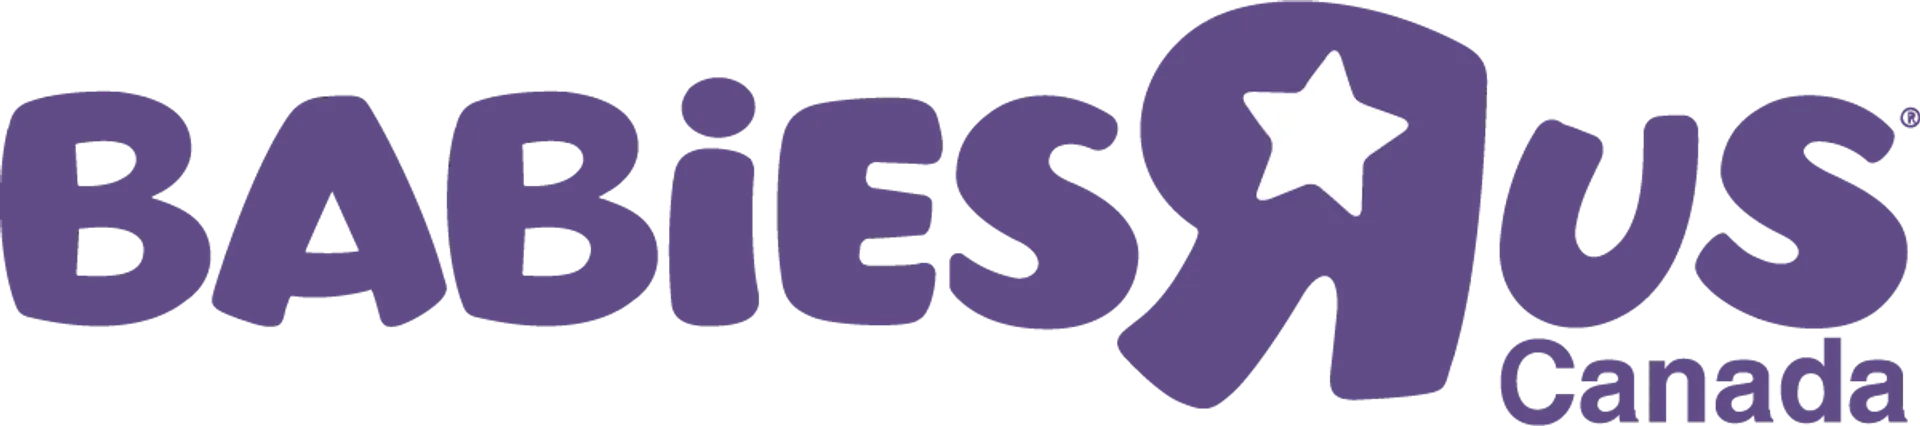 BABIES 'R' US logo